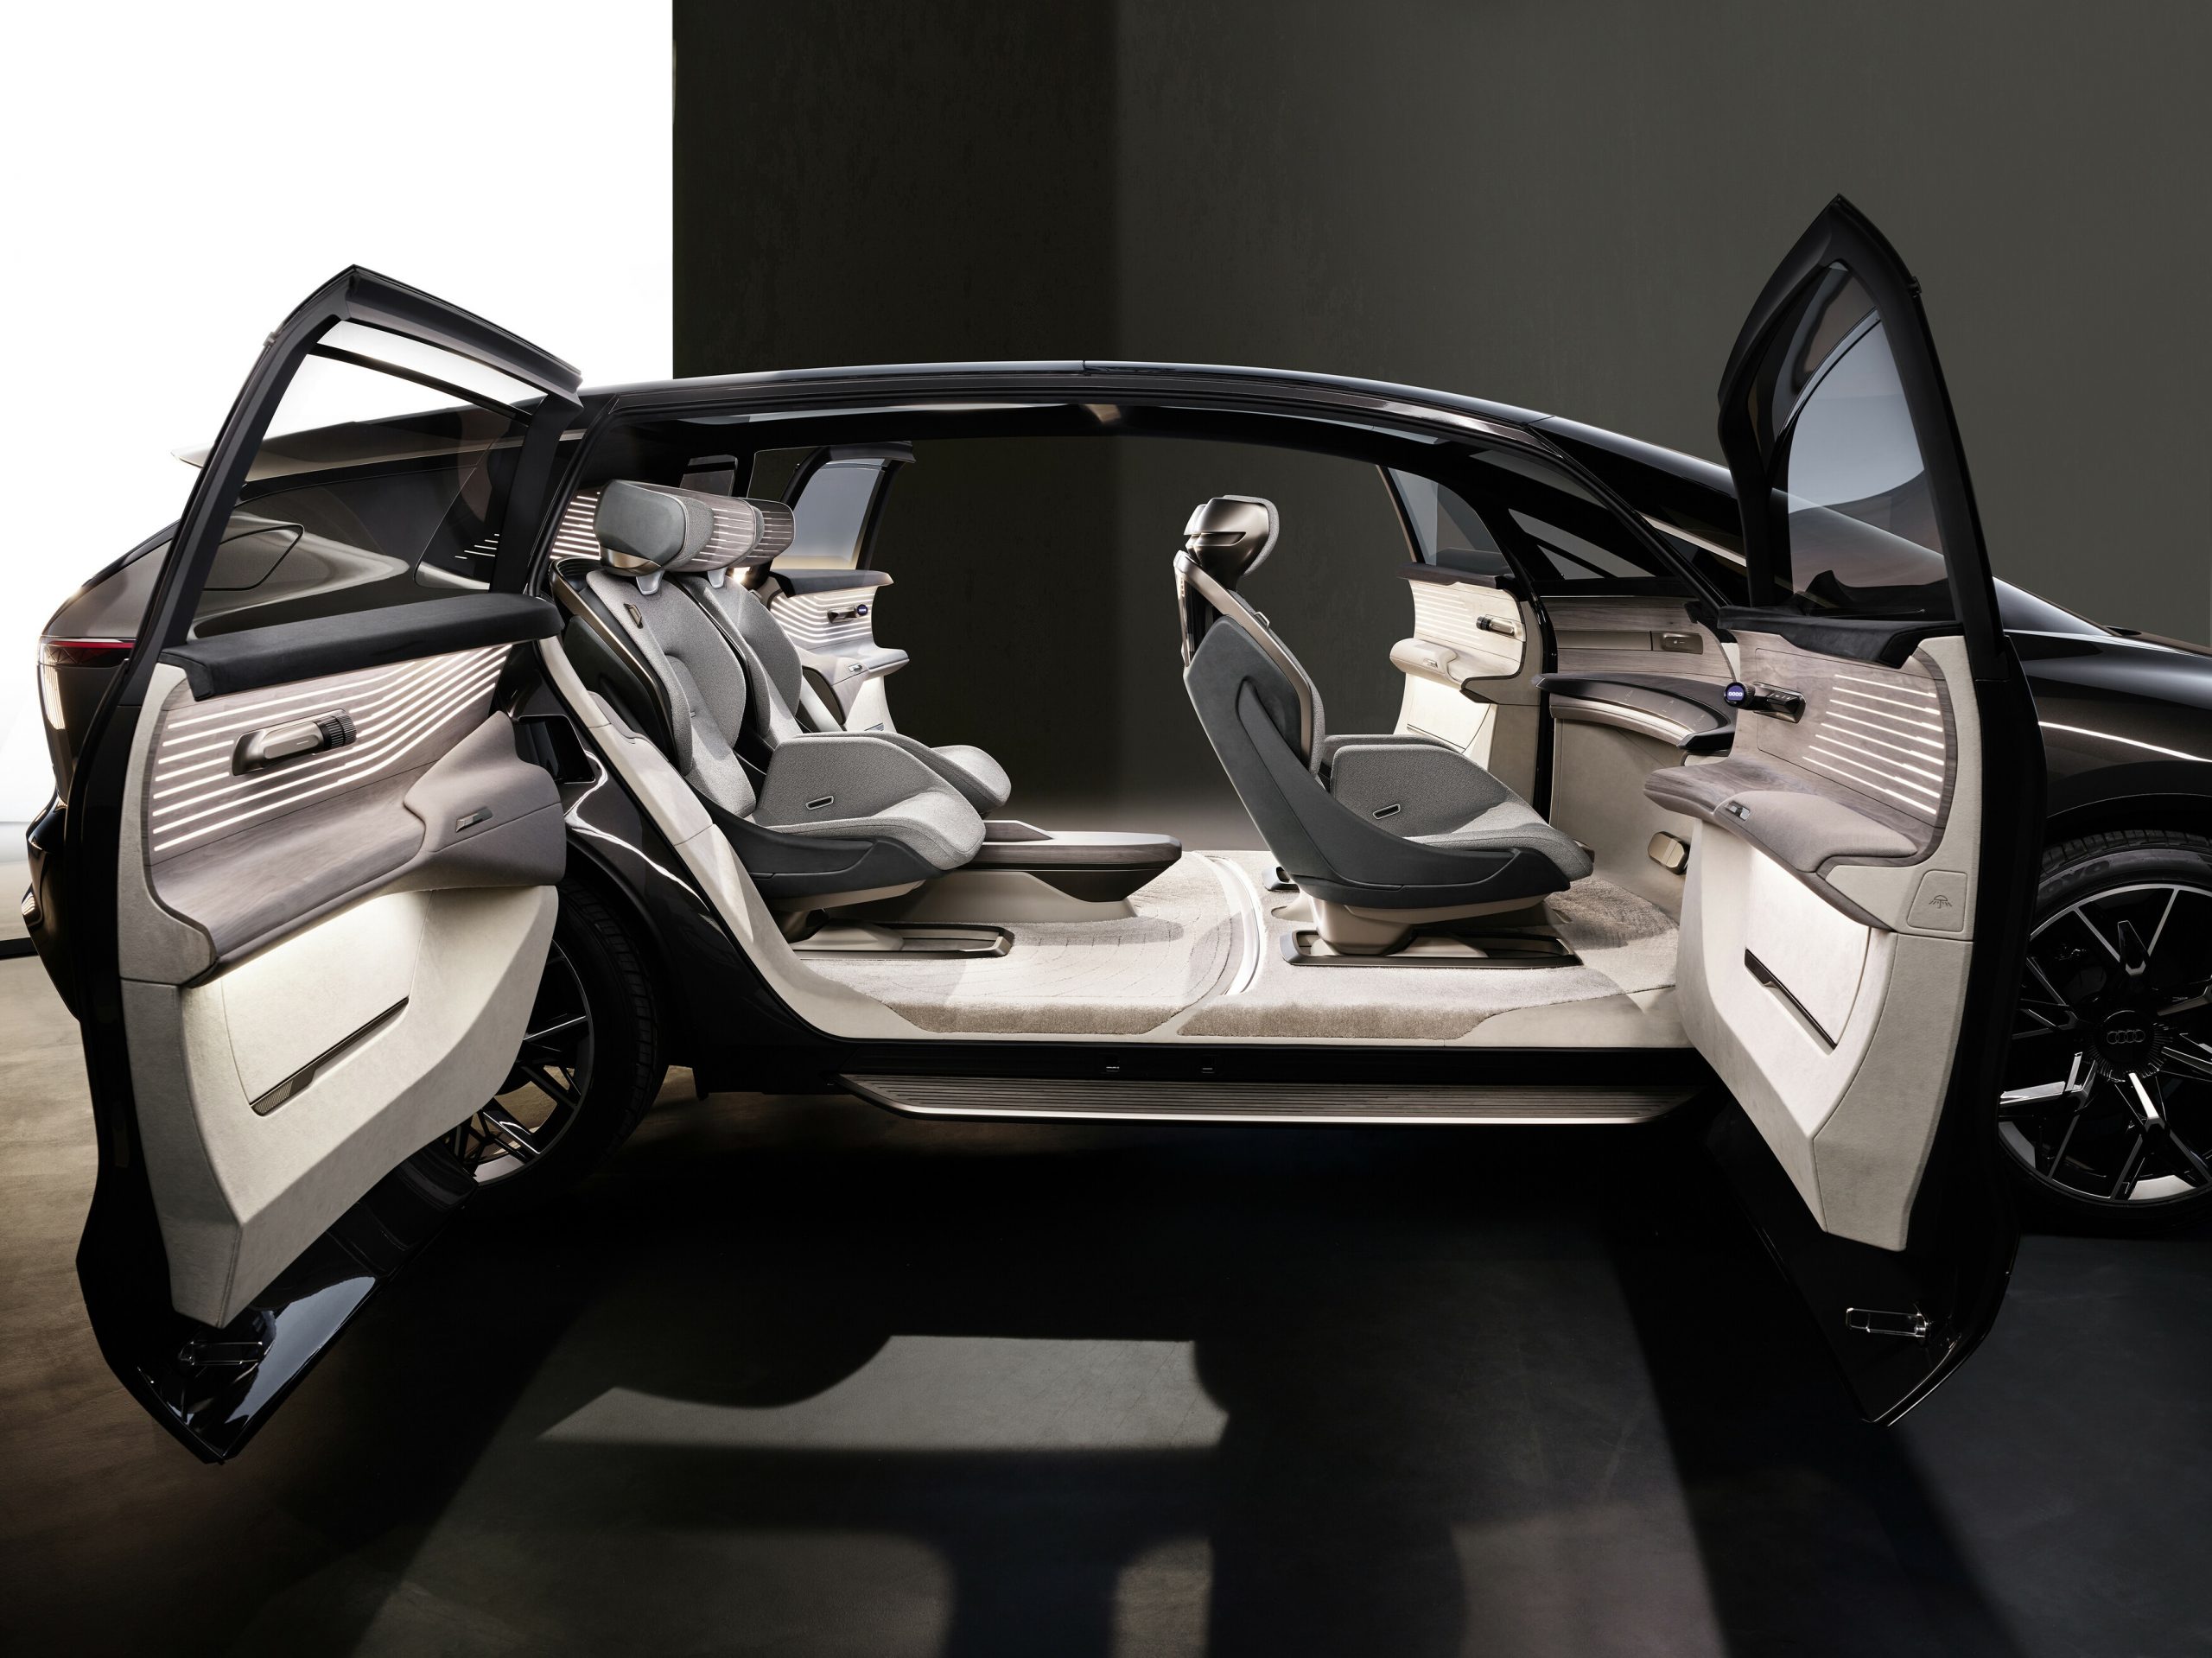 Το εσωτερικό του Audi urbansphere